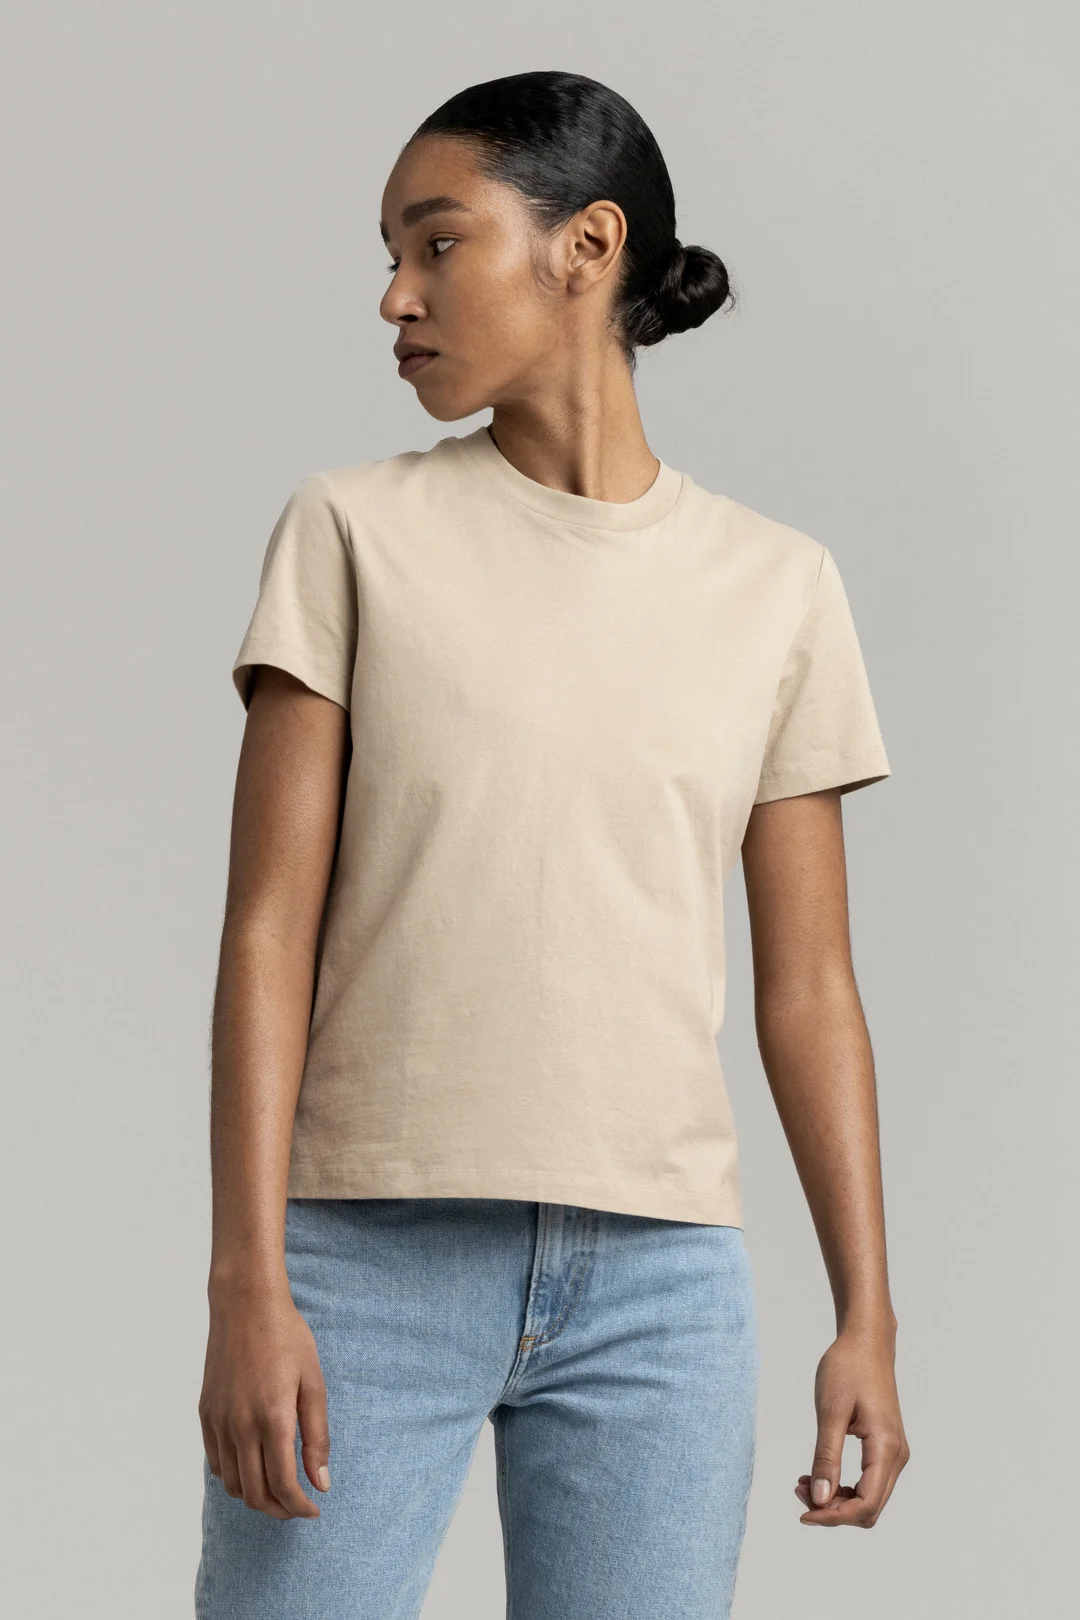 Sand T-Shirt | Organic Cotton Crewneck - ASKET